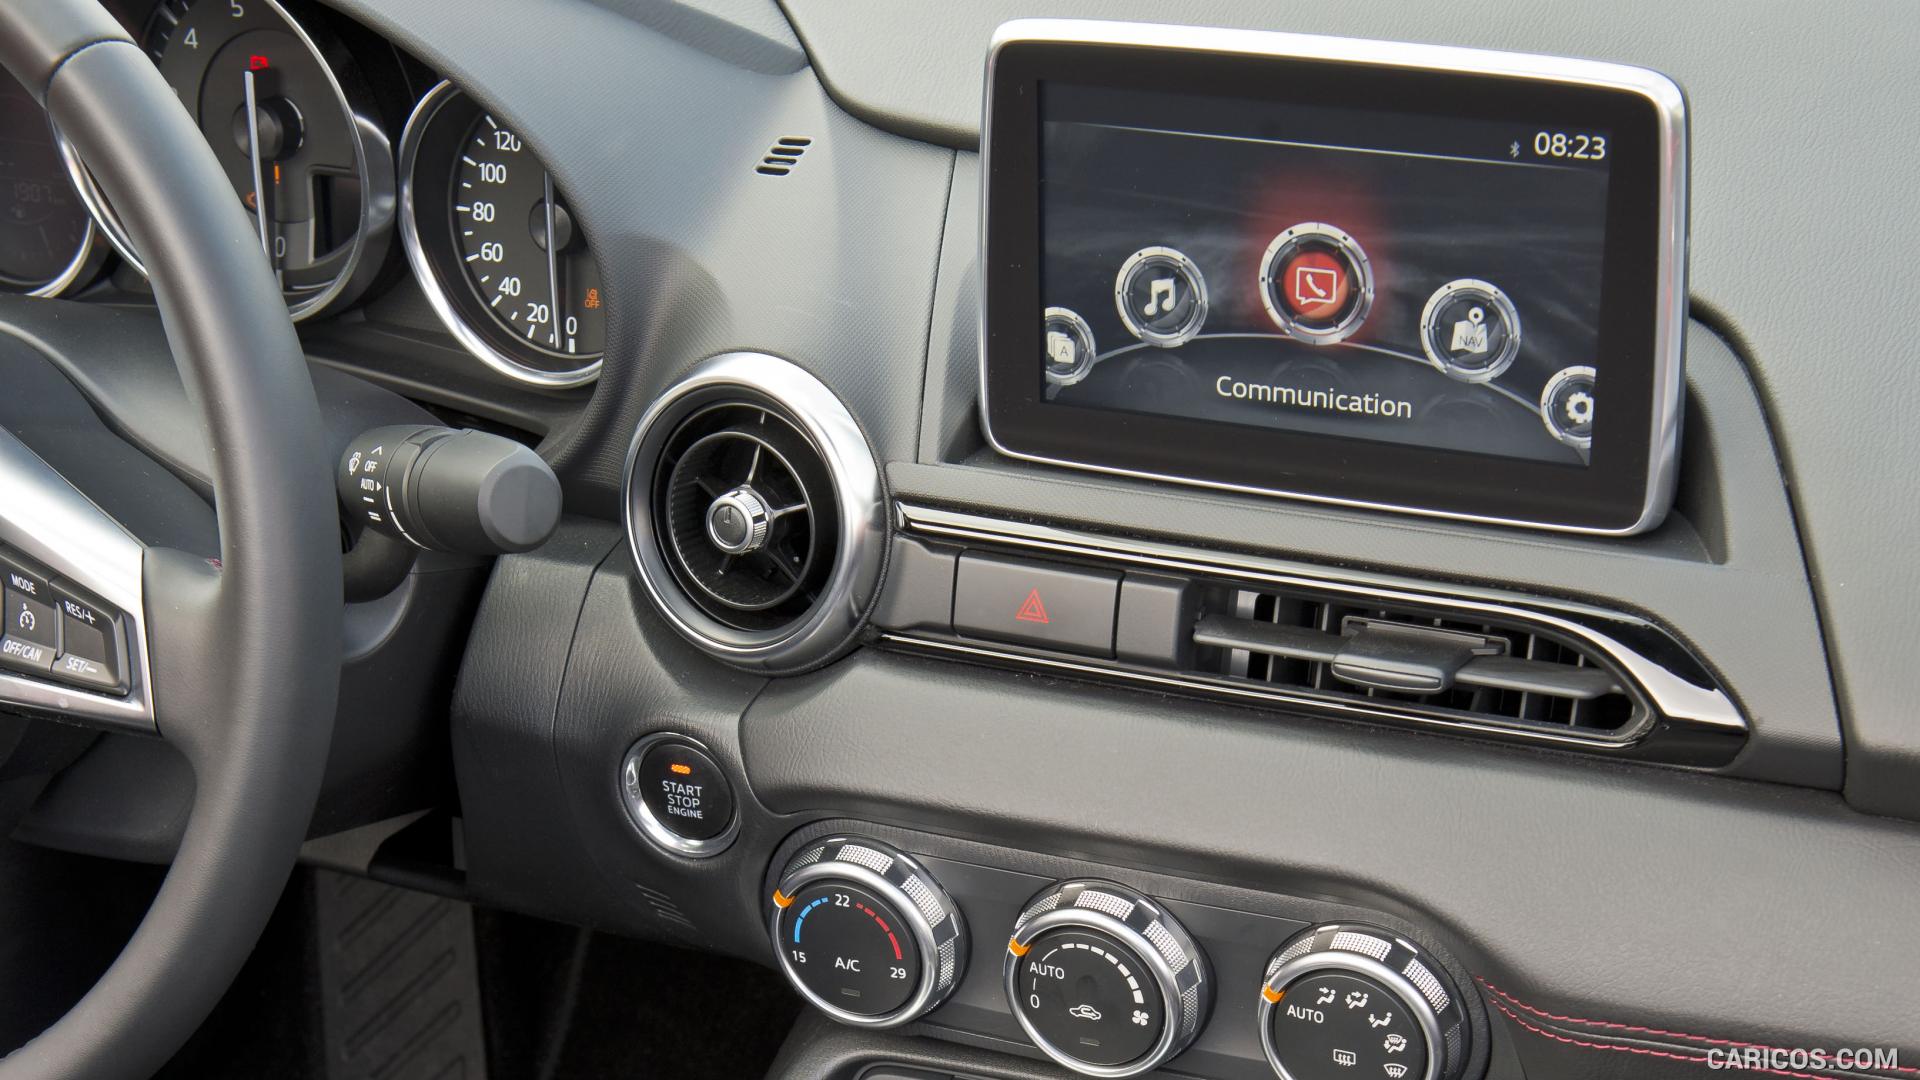 2016 Mazda MX-5 Miata (Euro-Spec)  - Central Console, #269 of 348